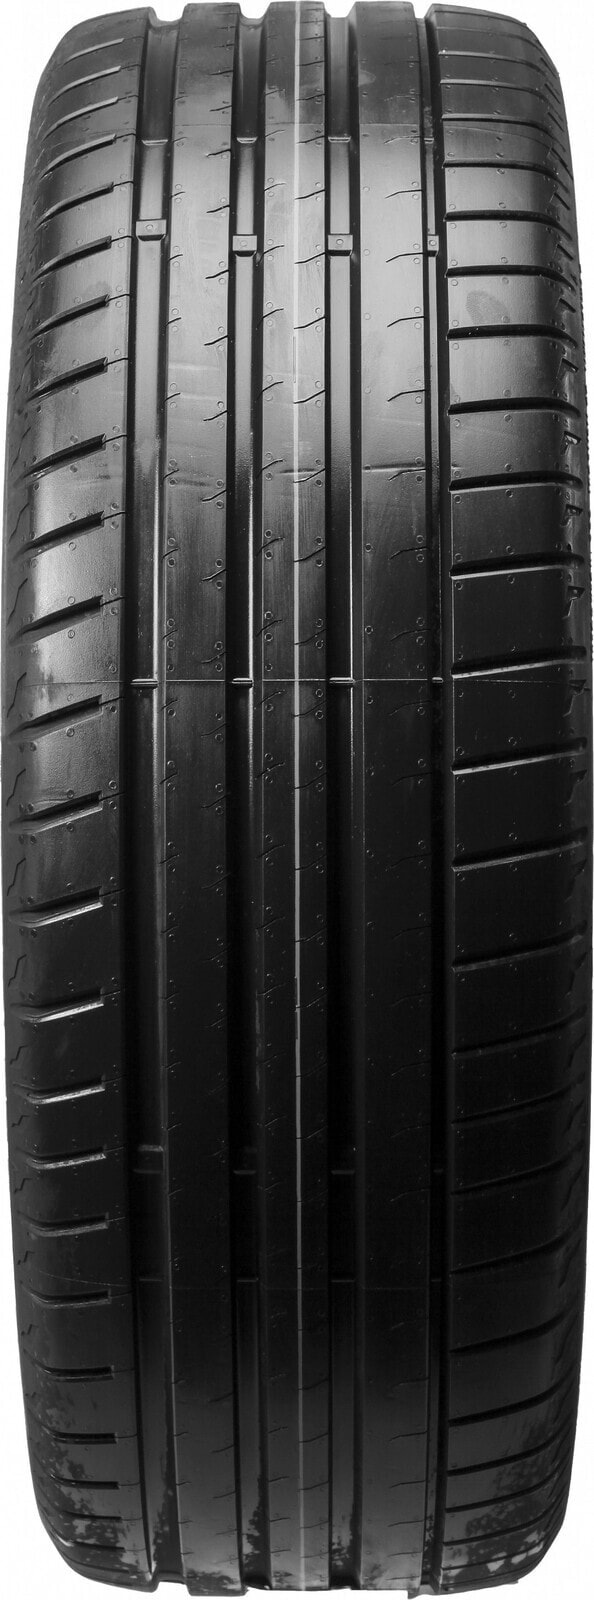 Шины летние Bridgestone Potenza Sport L XL 265/35 R20 (99Y) (Z)Y